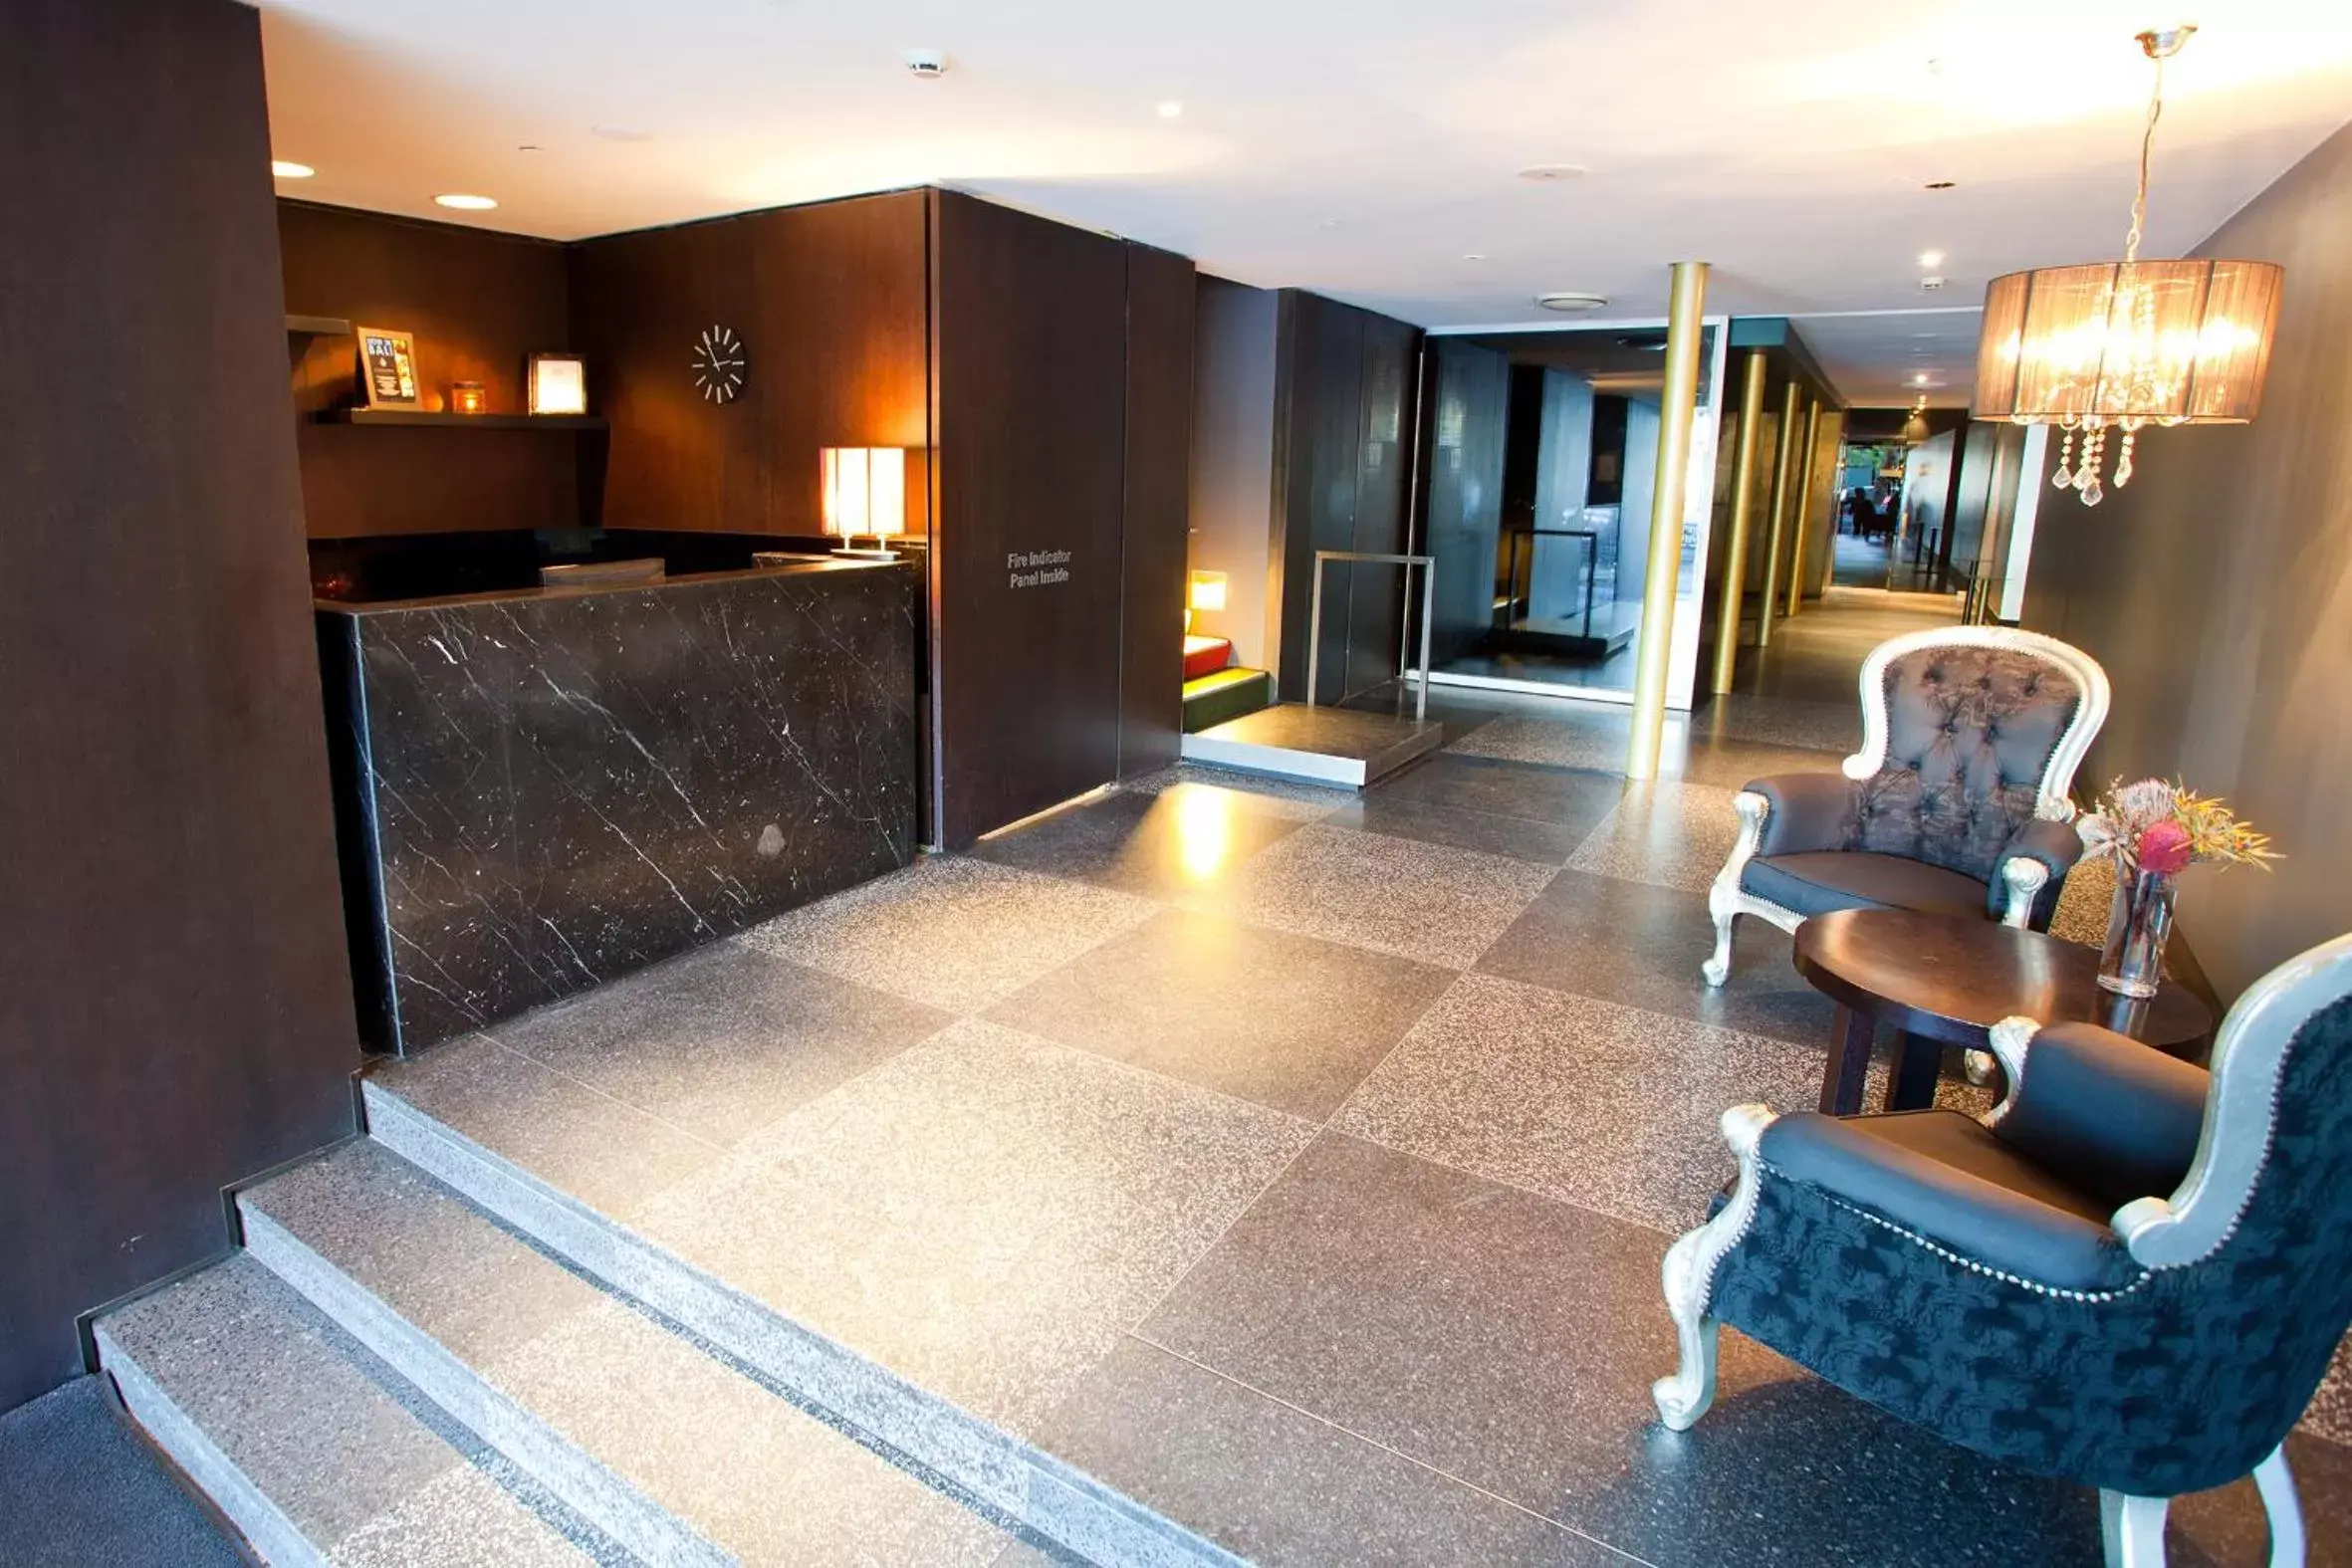 Lobby or reception, Lobby/Reception in Kirketon Hotel Sydney